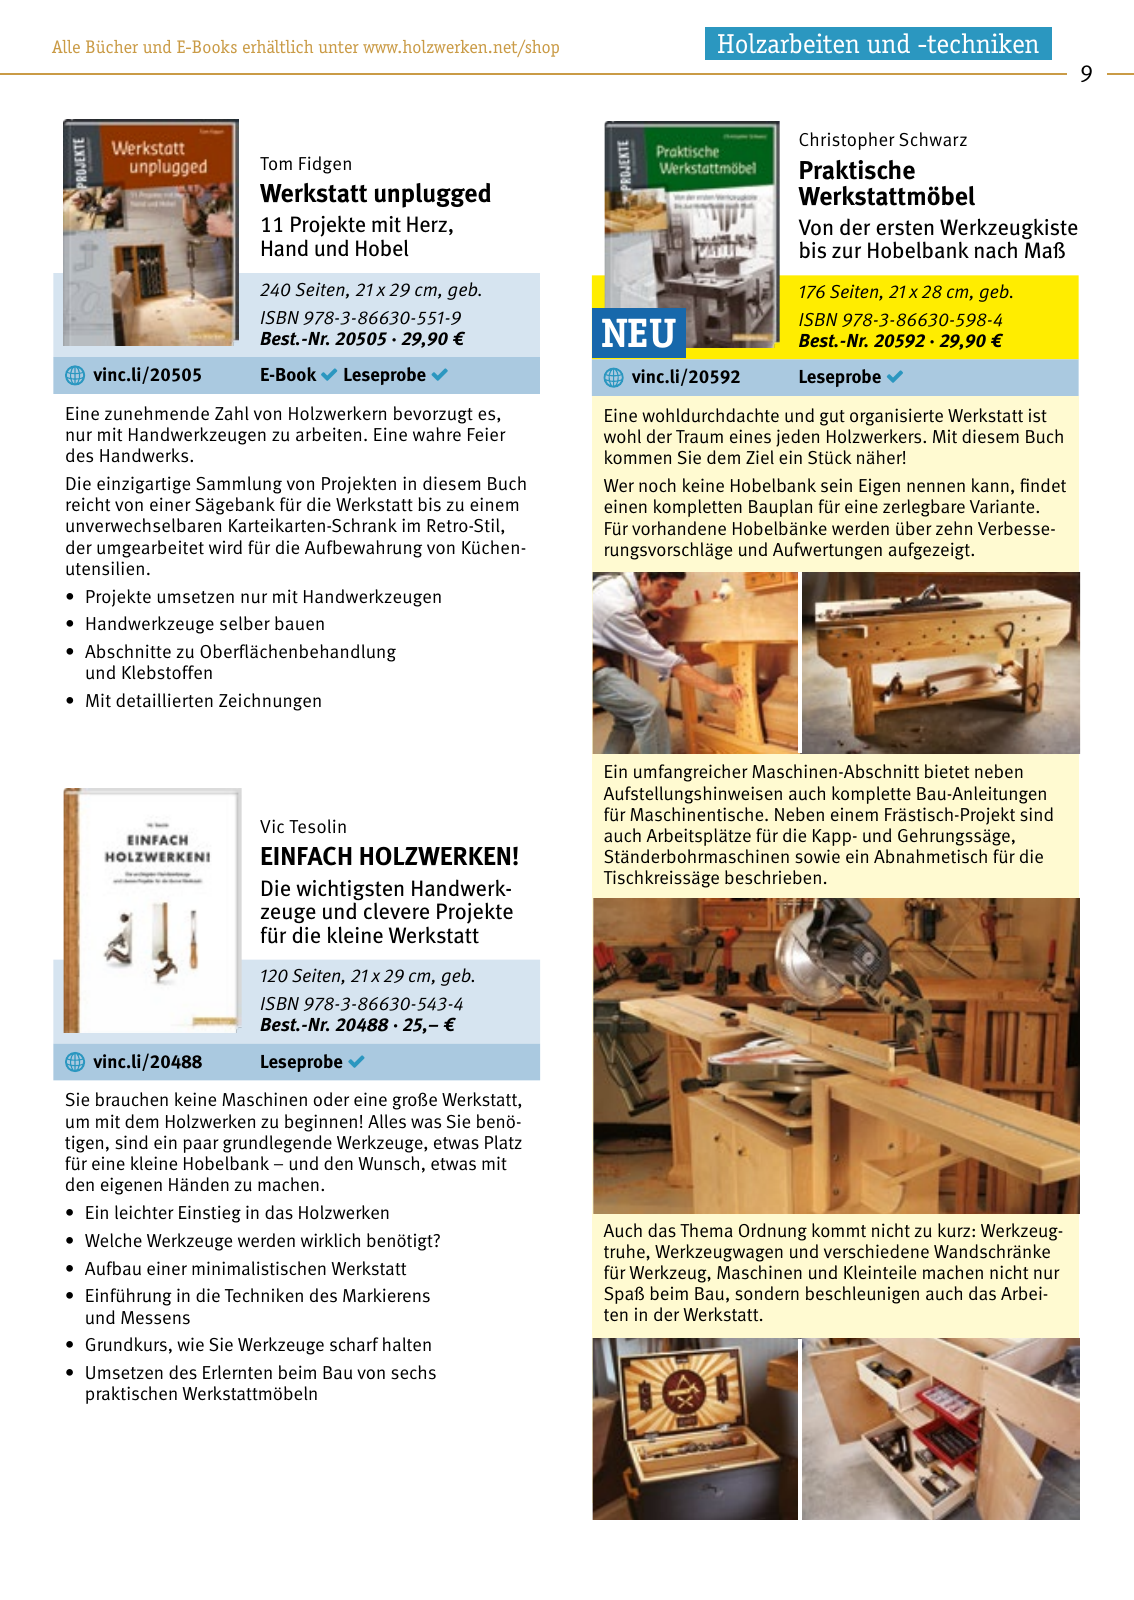 Vorschau HolzWerken Katalog 2019 Seite 9